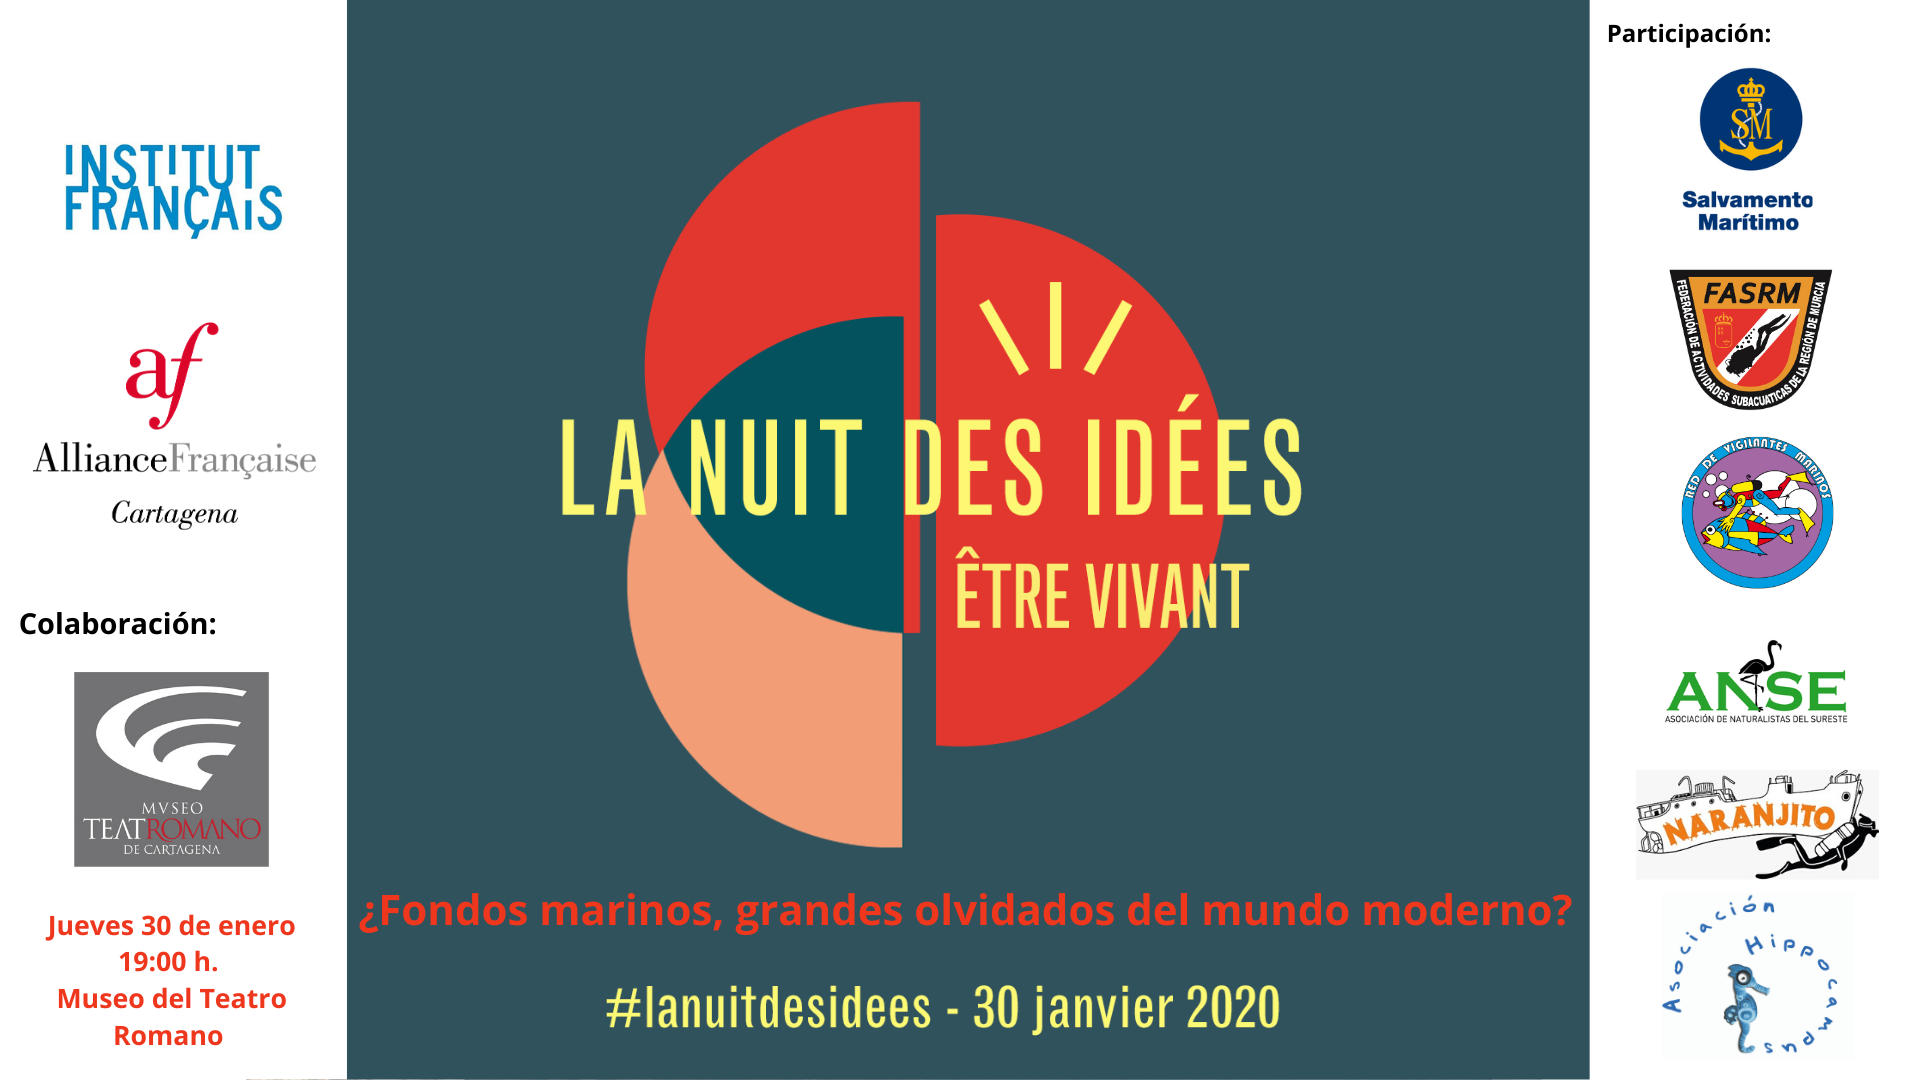 La Noche de las Ideas 2020 - La nuit des idées 2020 6